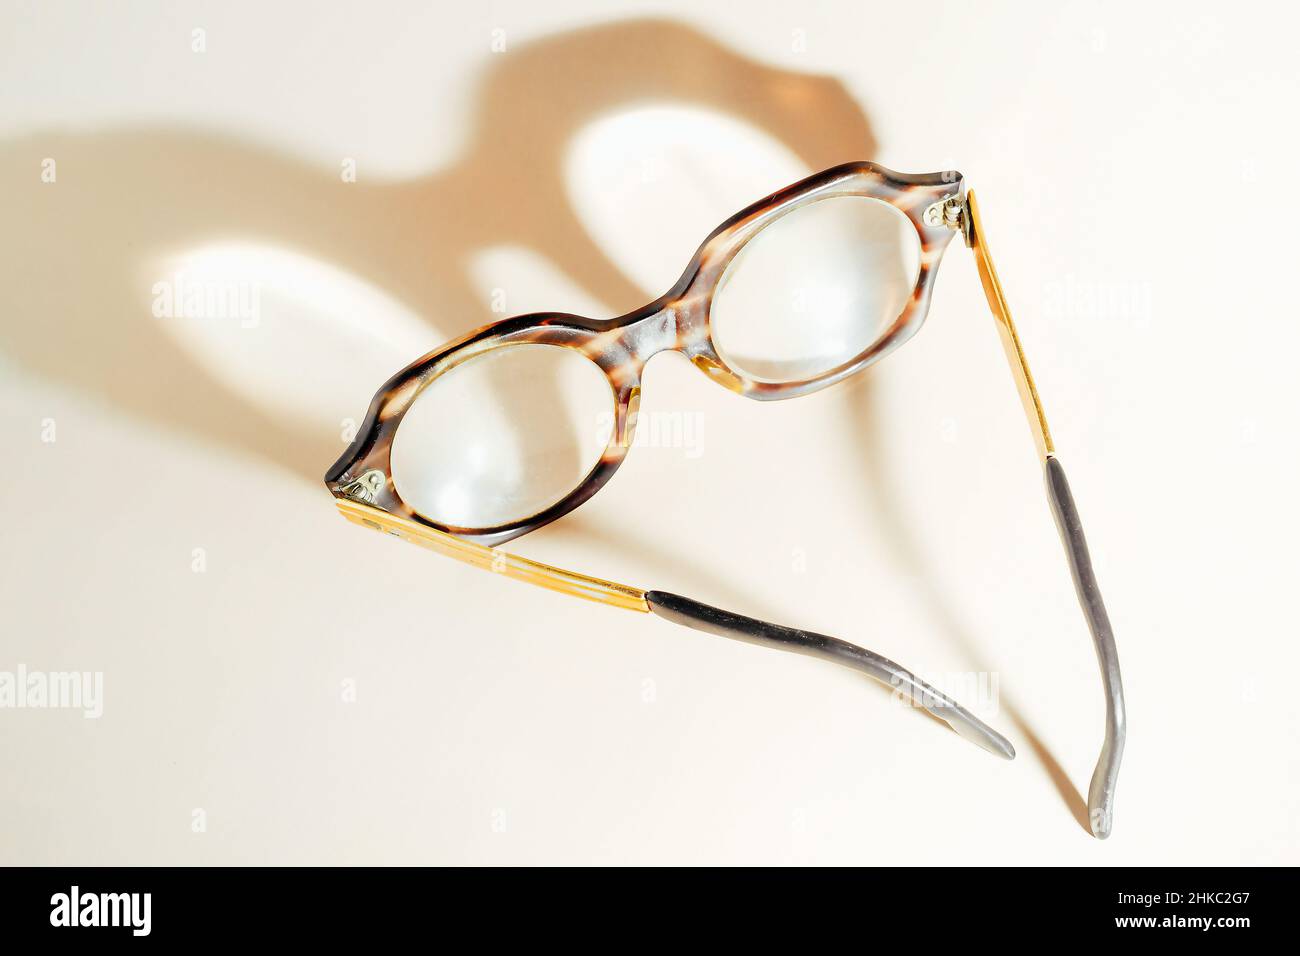 Las gafas para las personas mayores se encuentran sobre fondo beige y  sombra de yeso. Vista desde arriba. Tema del deterioro de la visión con la  edad. Miopía senil. No gafas de